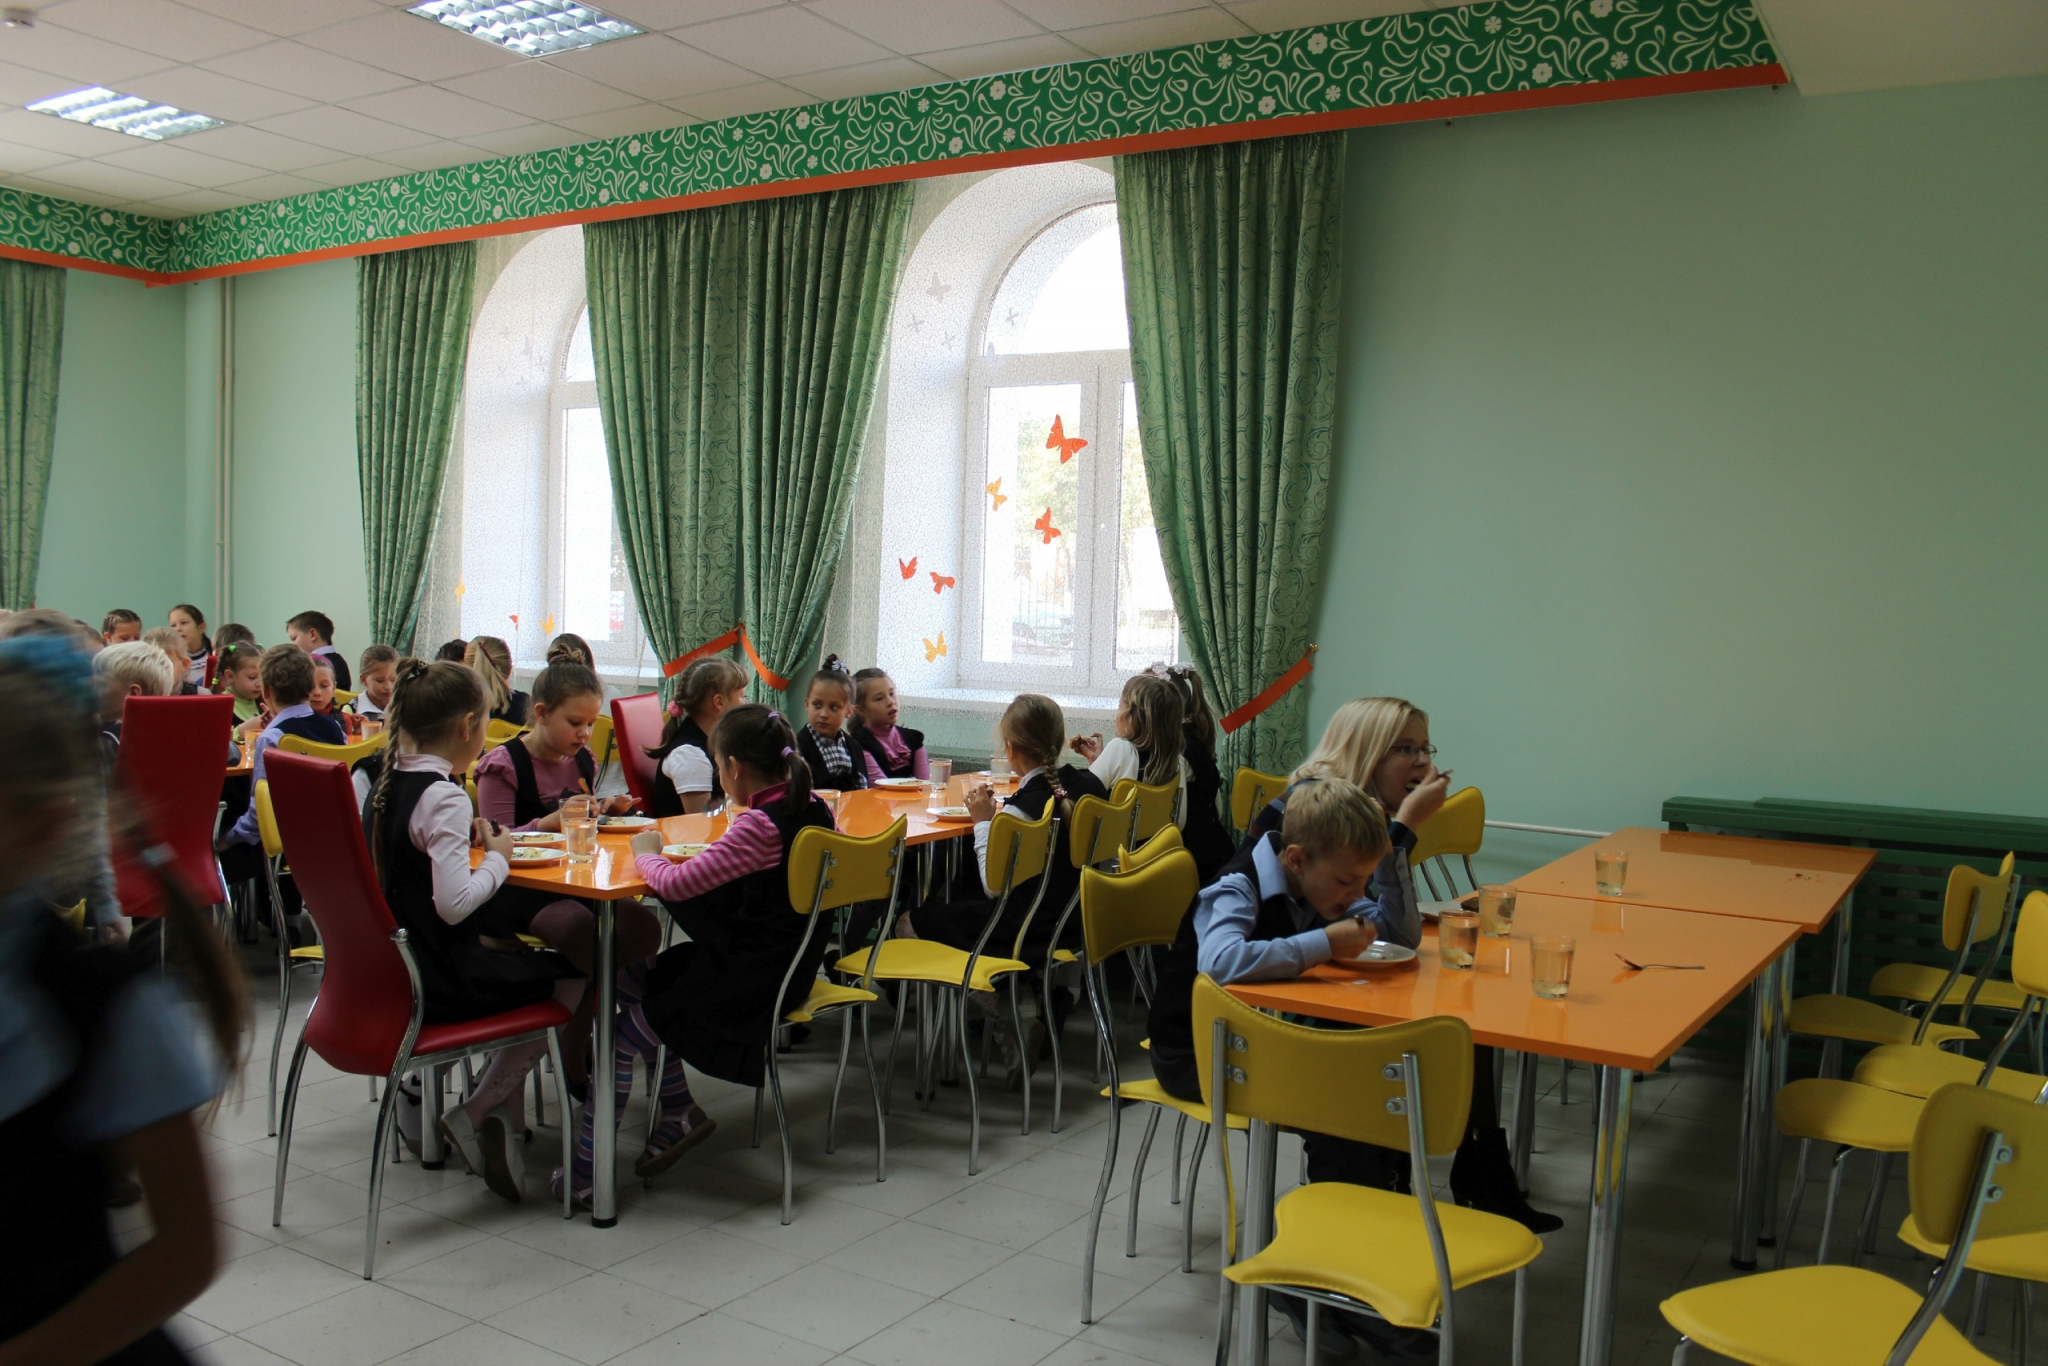 50 директоров чувашских школ наказали за плохое питание детей